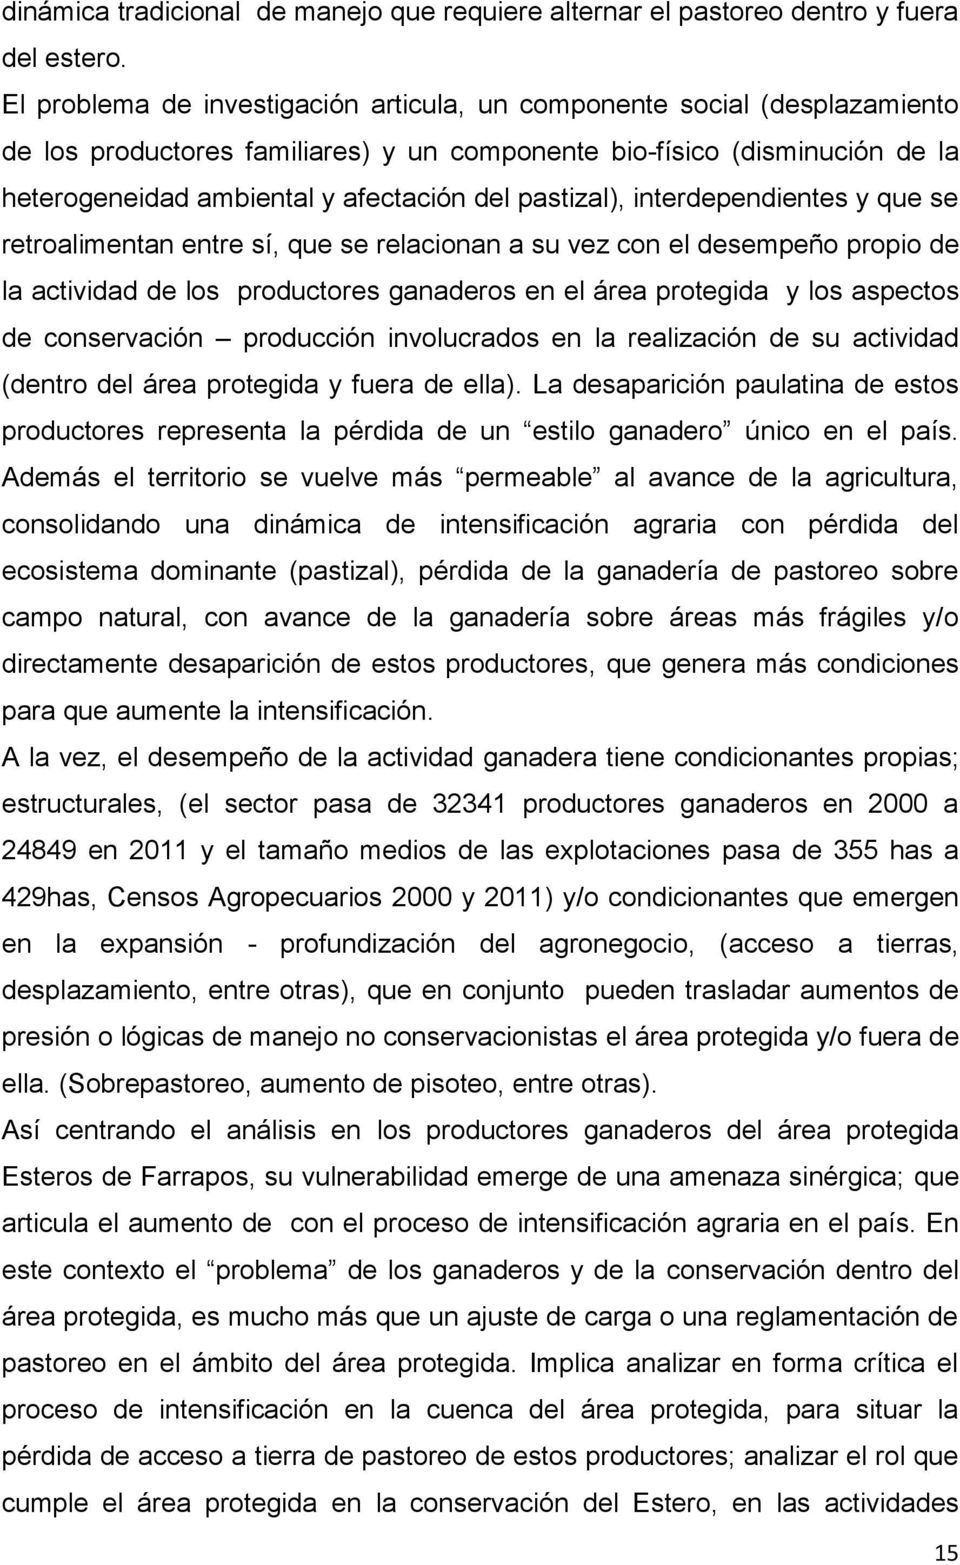 pastizal), interdependientes y que se retroalimentan entre sí, que se relacionan a su vez con el desempeño propio de la actividad de los productores ganaderos en el área protegida y los aspectos de